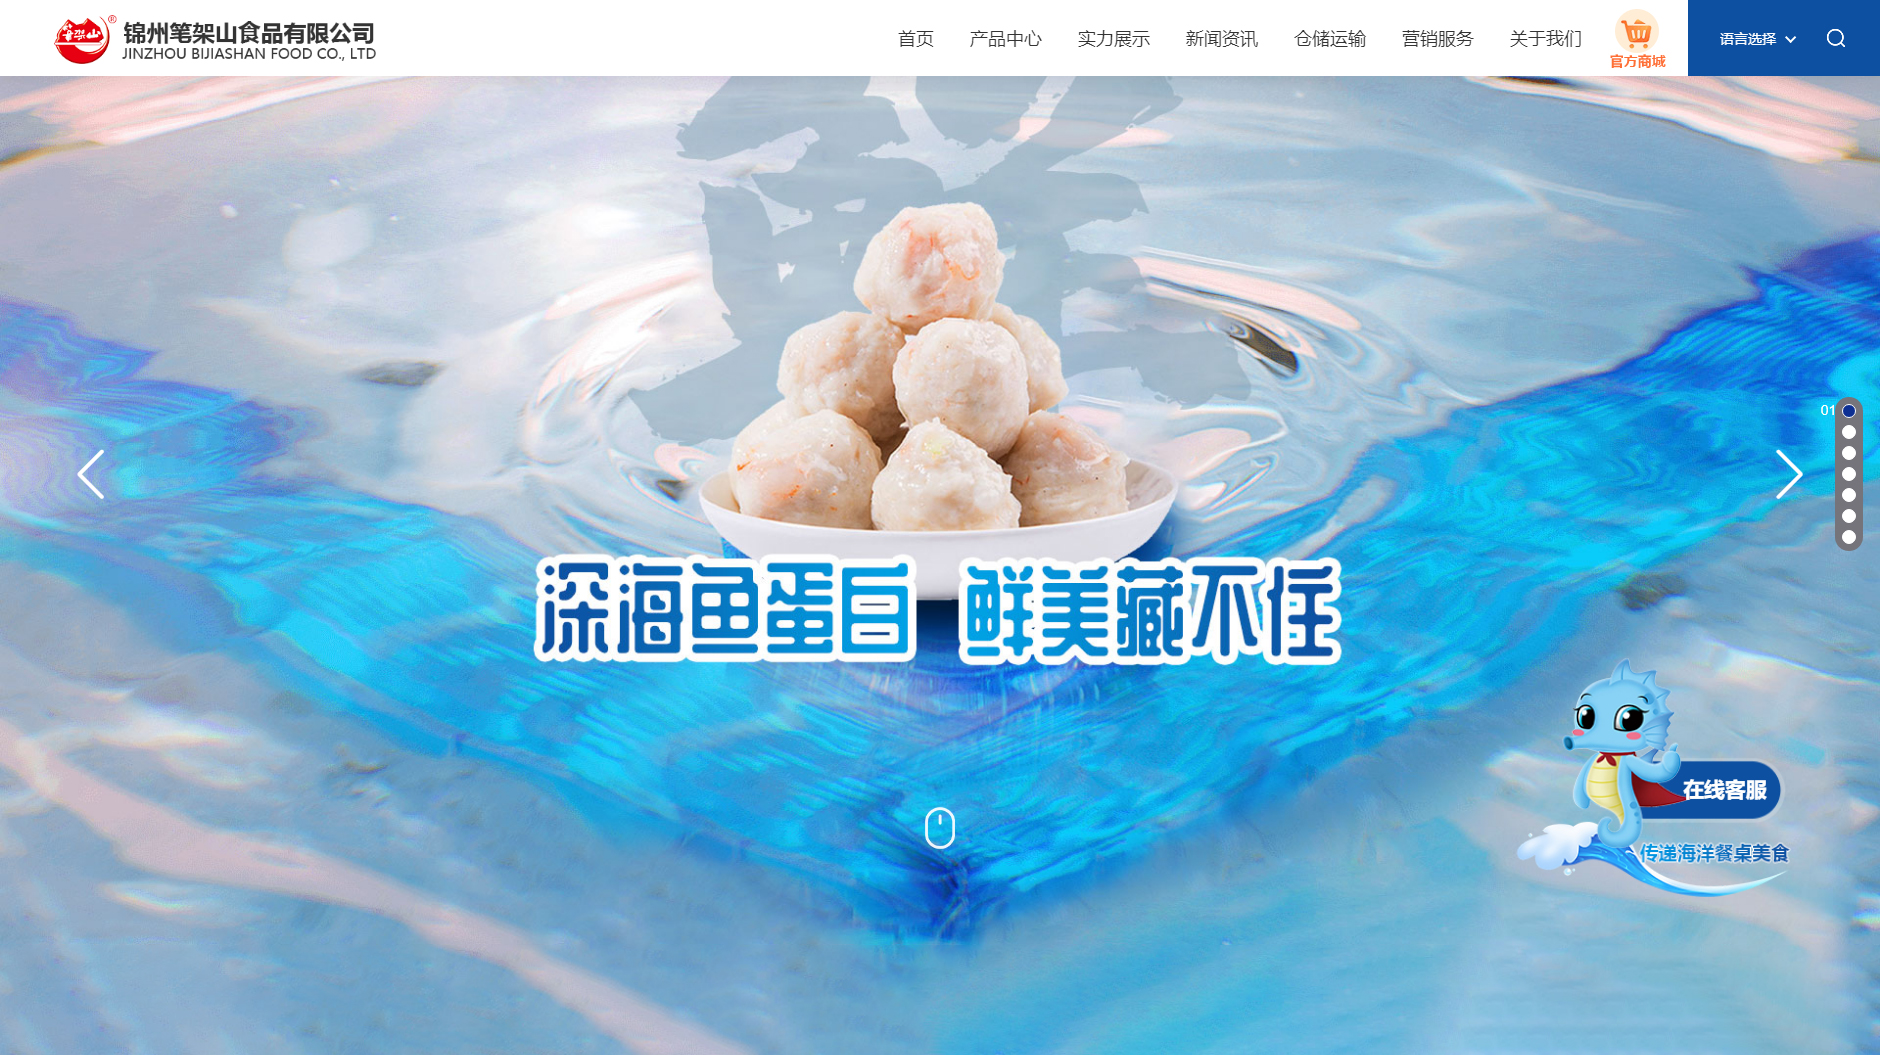 锦州笔架山食品有限公司网站设计图